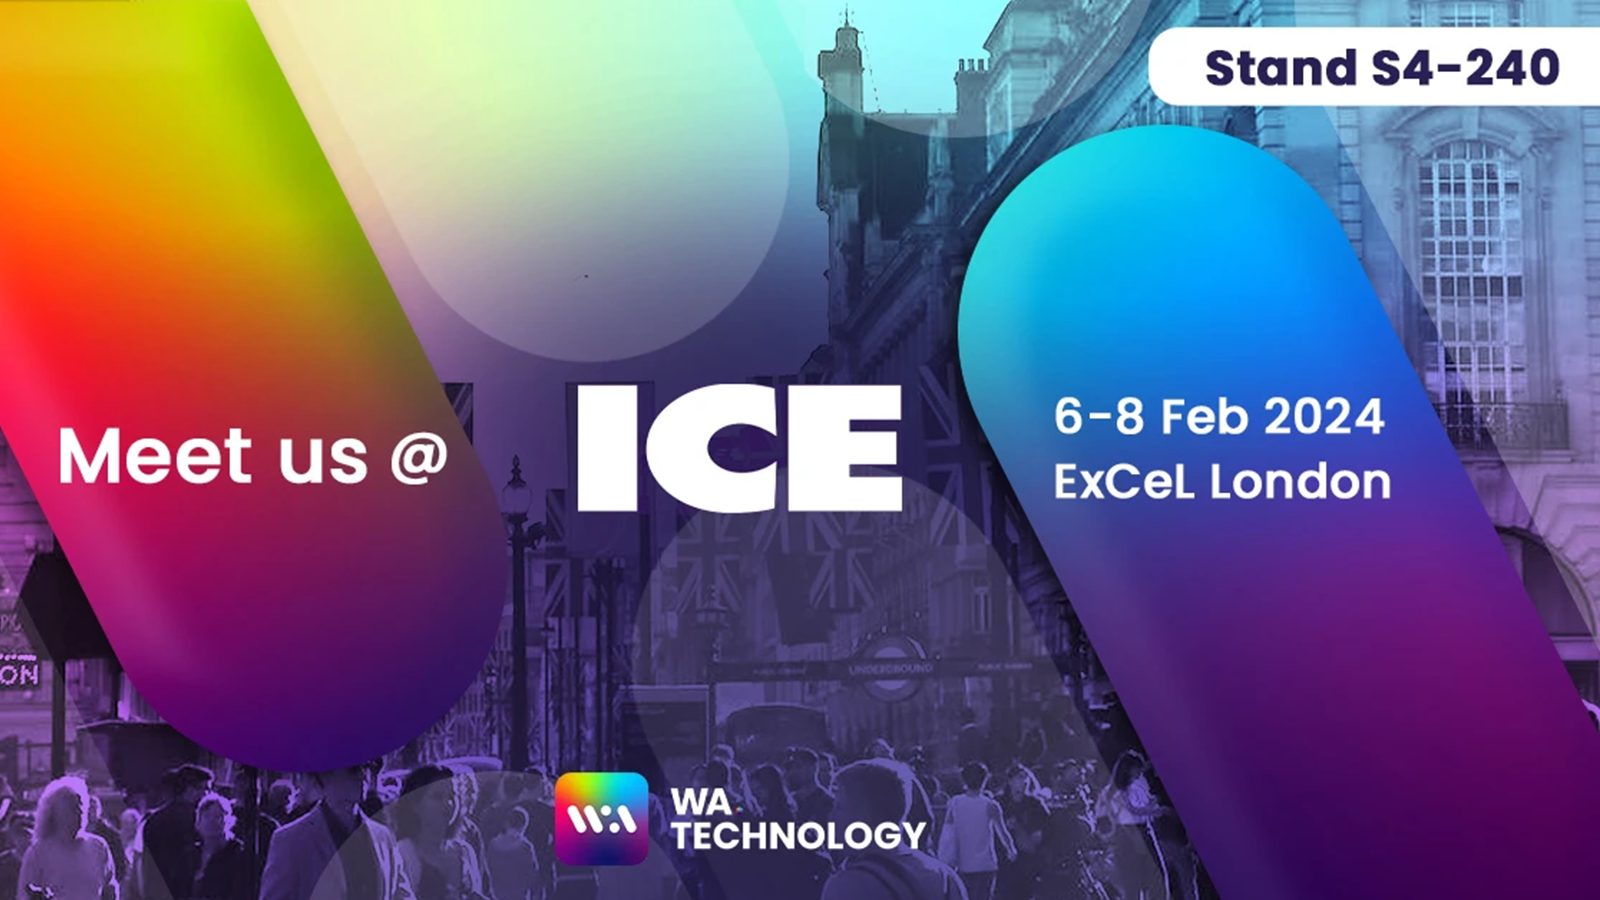 WA.Technology at ICE London 2024